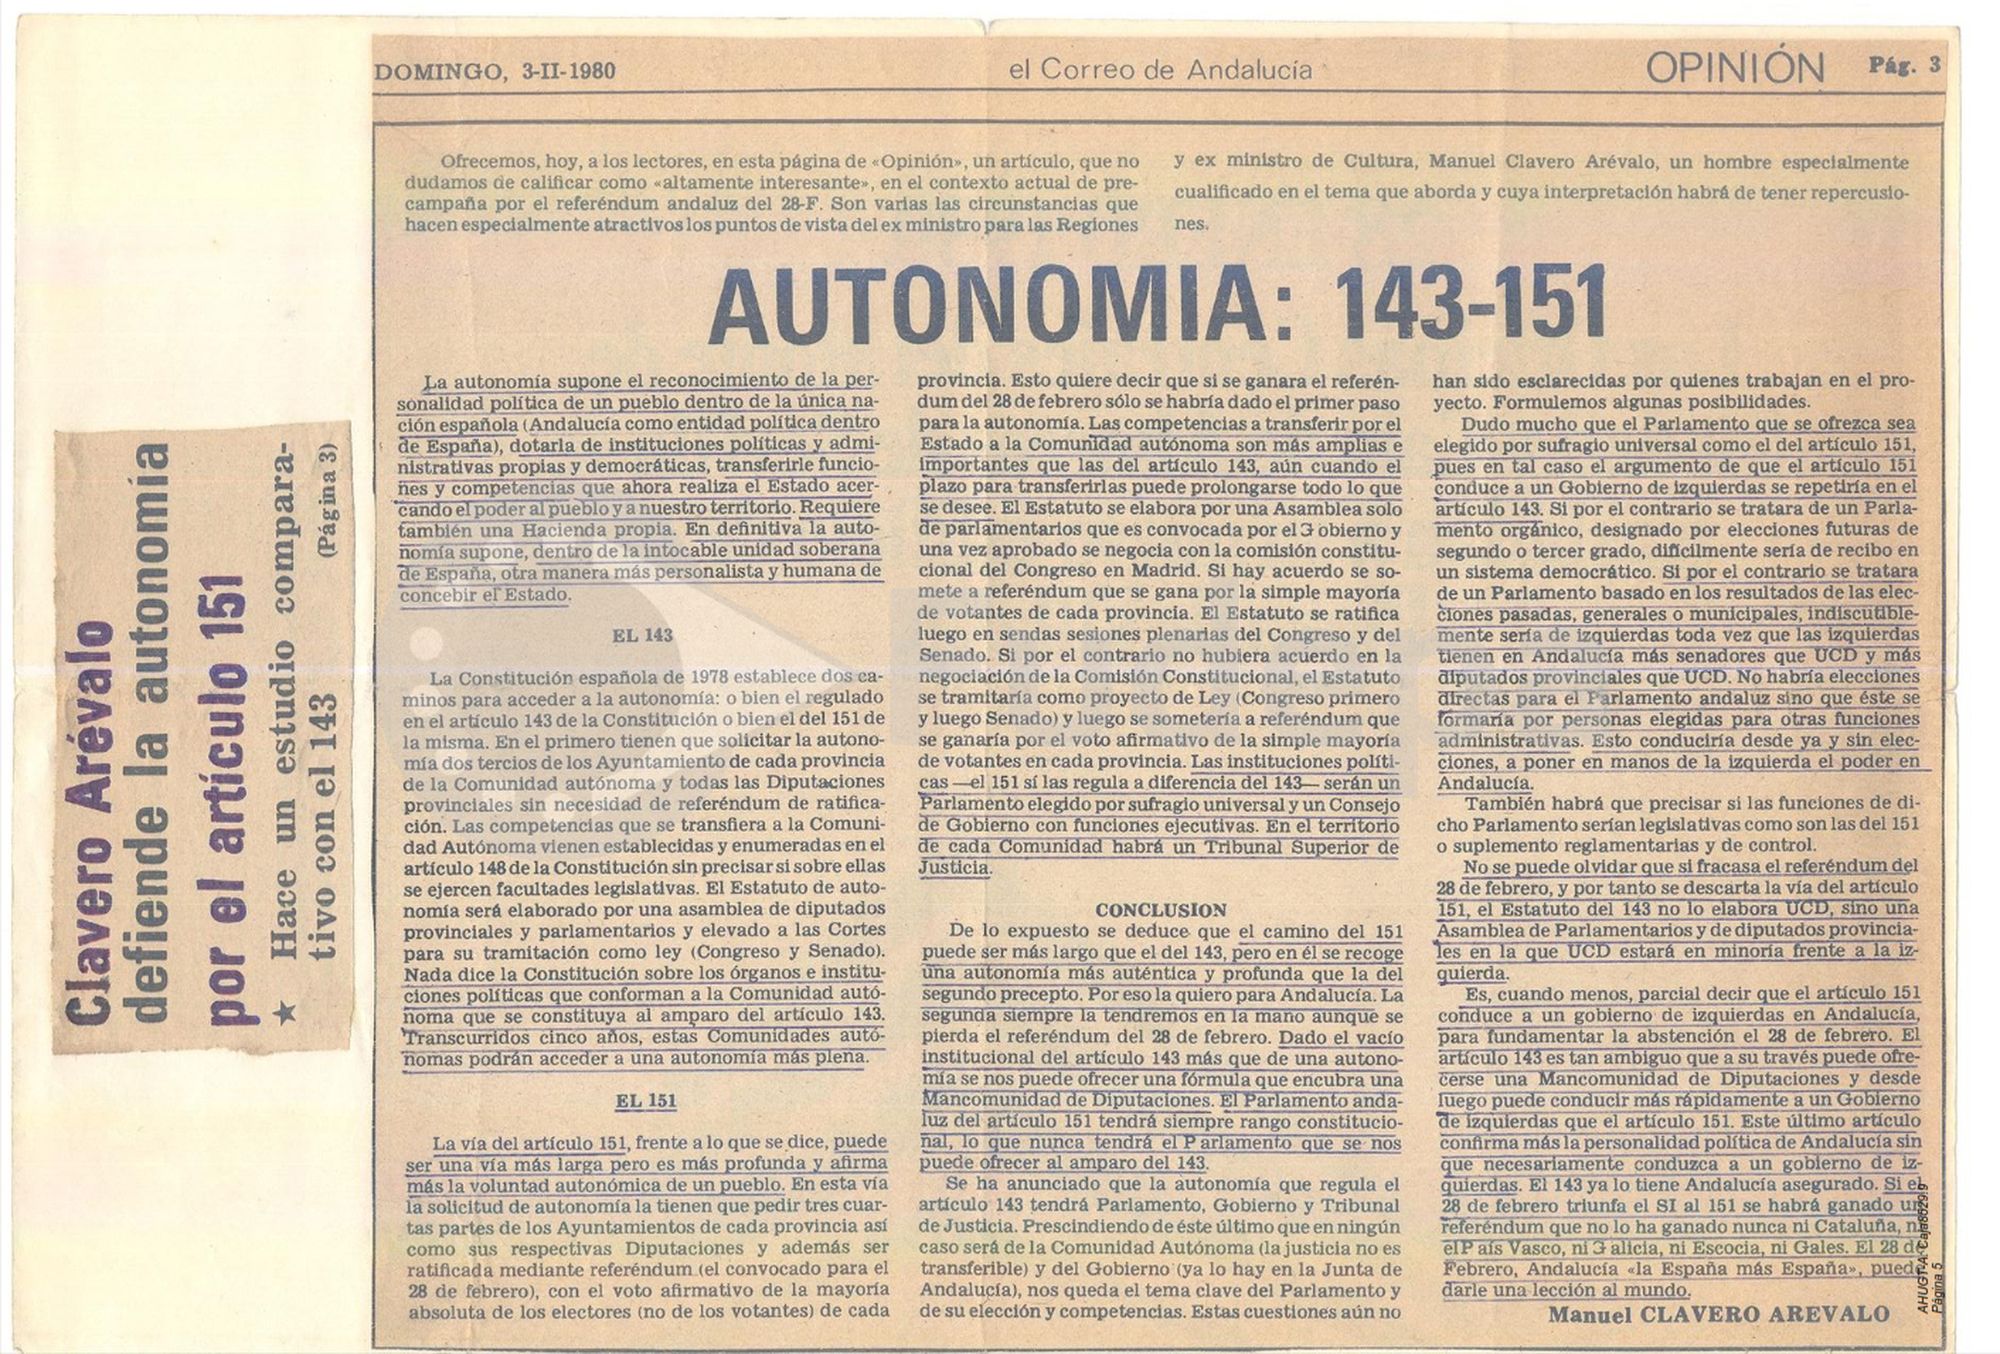 Estudio comparativo entre el artículo 145 y 151 de la Constitución realizado por Clavero Arévalo para El Correo de Andalucía, publicado el 3 de febrero de 1980